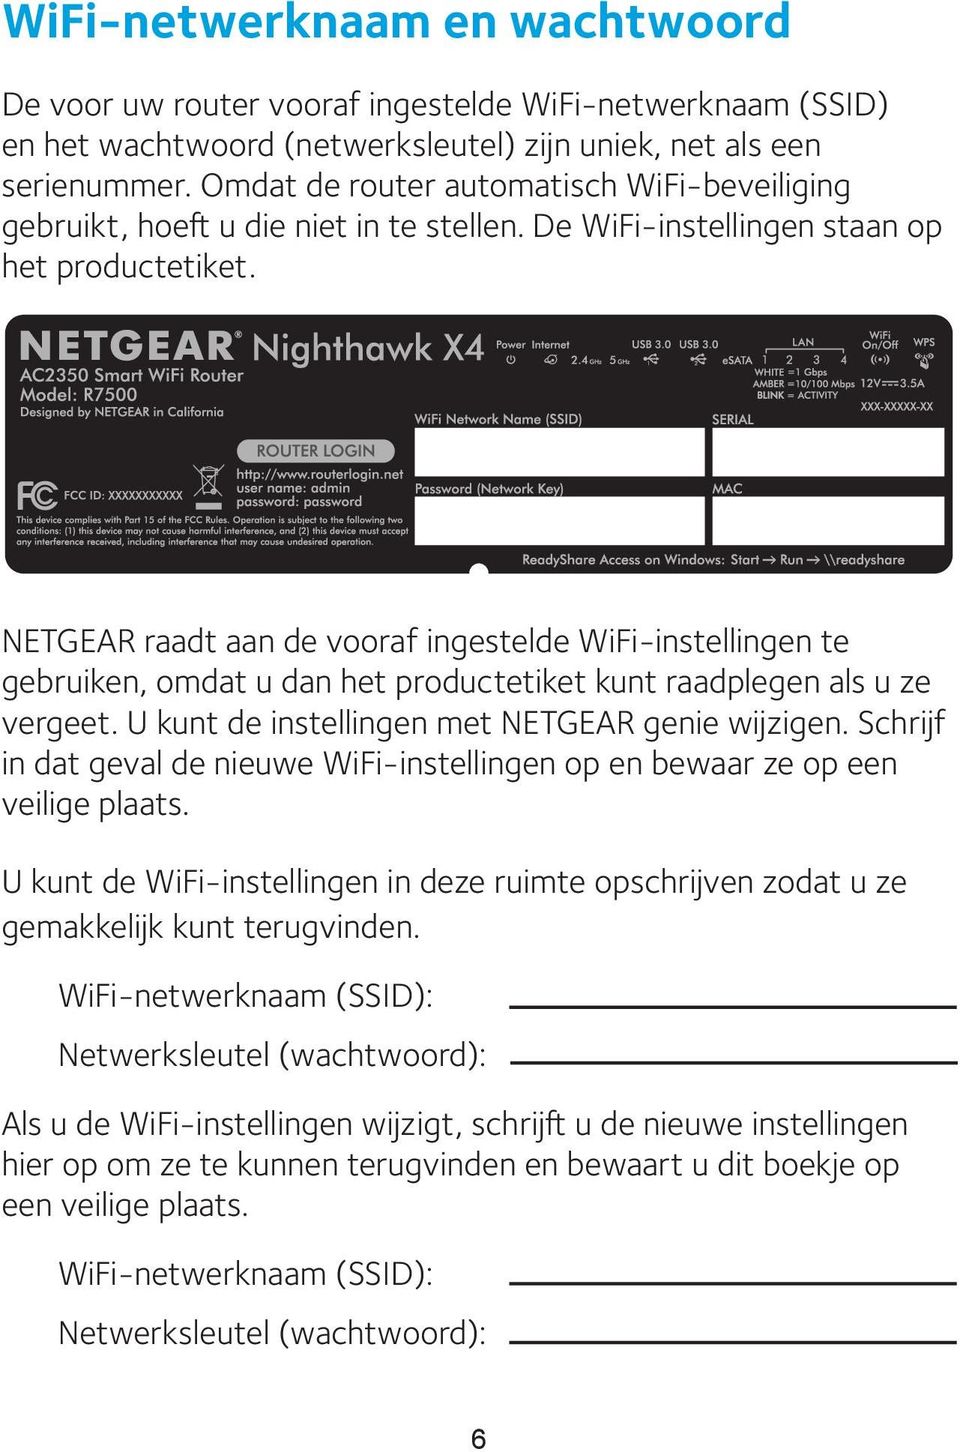 NETGEAR raadt aan de vooraf ingestelde WiFi-instellingen te gebruiken, omdat u dan het productetiket kunt raadplegen als u ze vergeet. U kunt de instellingen met NETGEAR genie wijzigen.